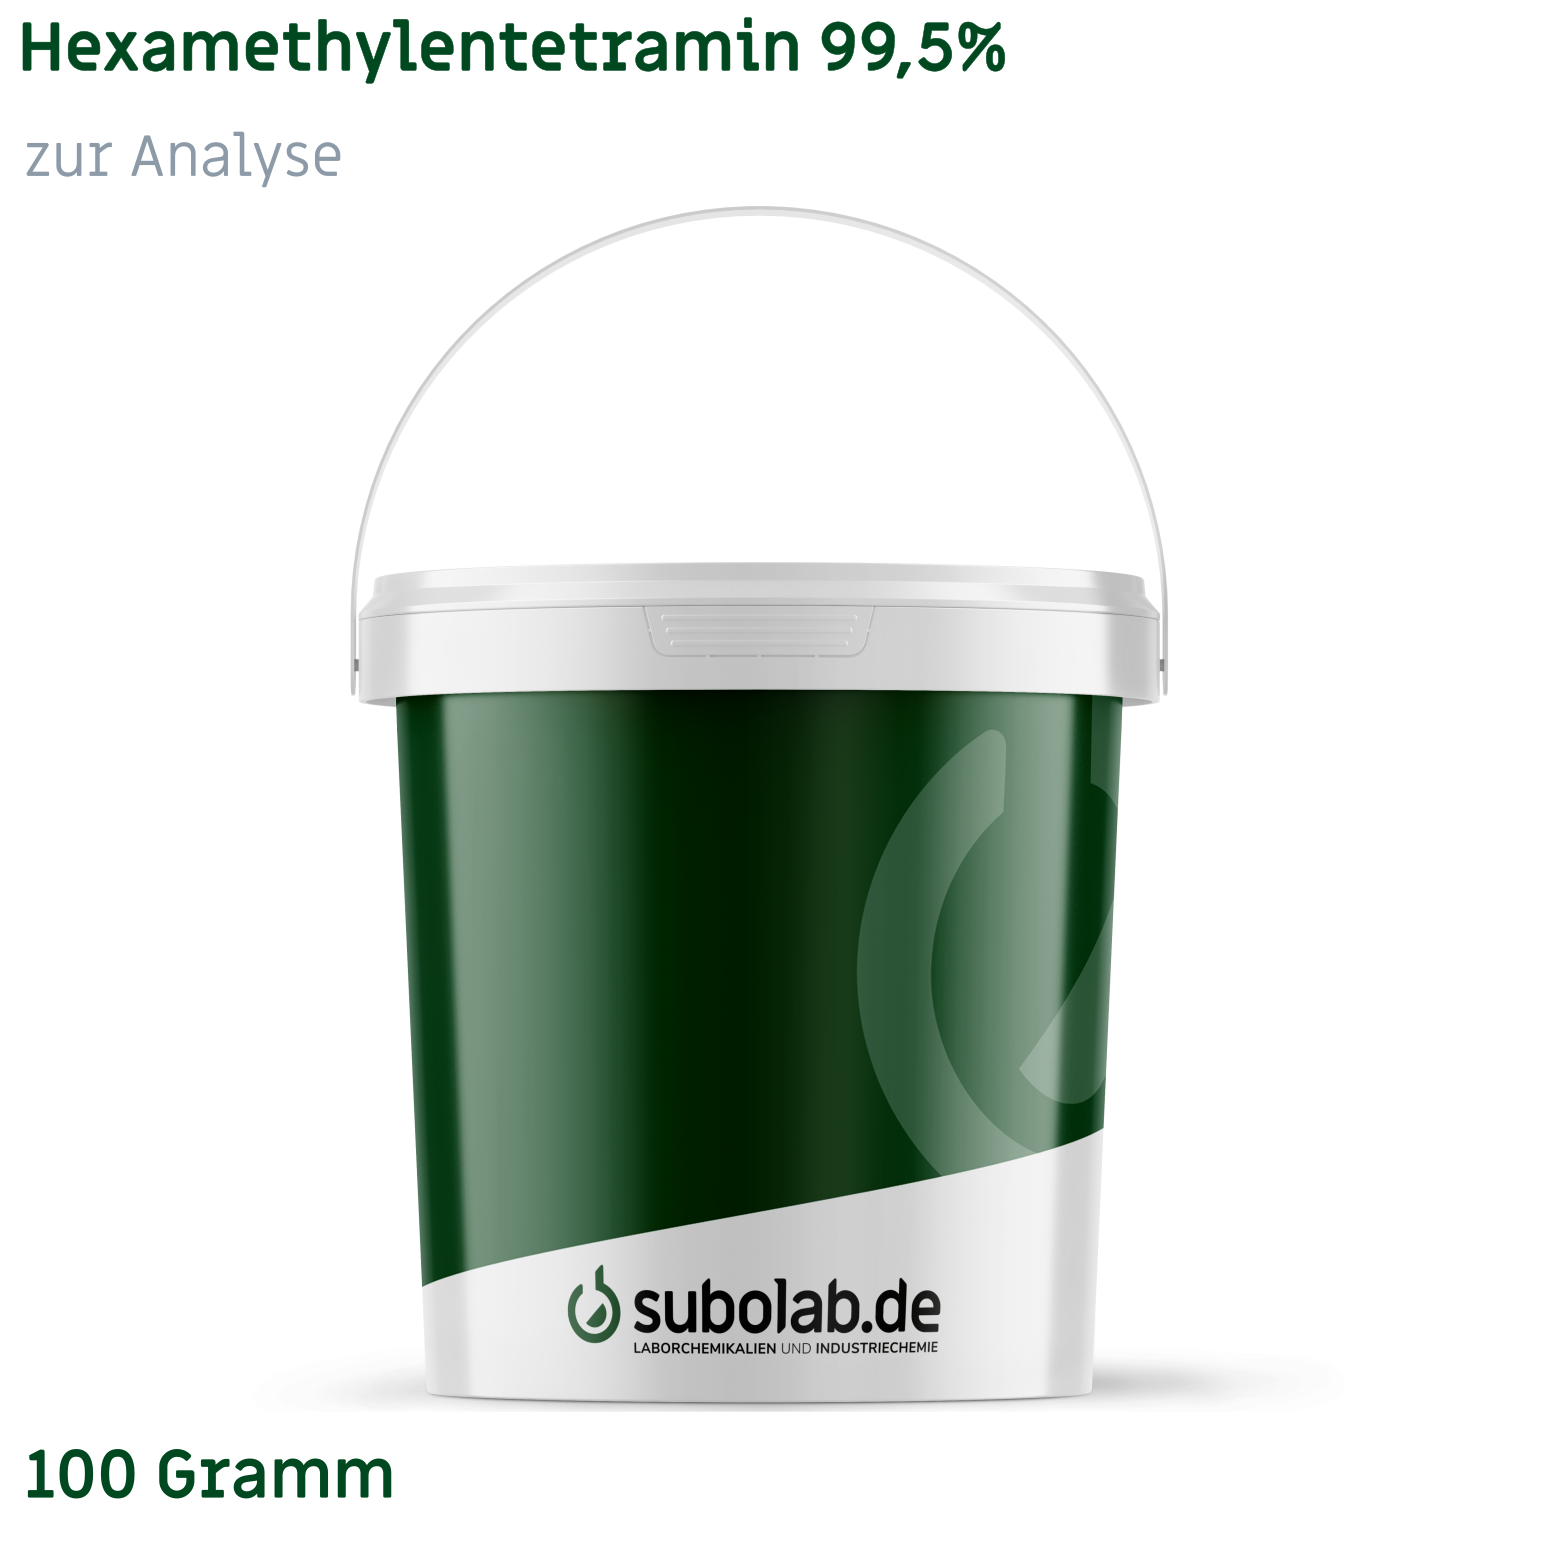 Bild von Hexamethylentetramin 99,5% zur Analyse (100 Gramm)